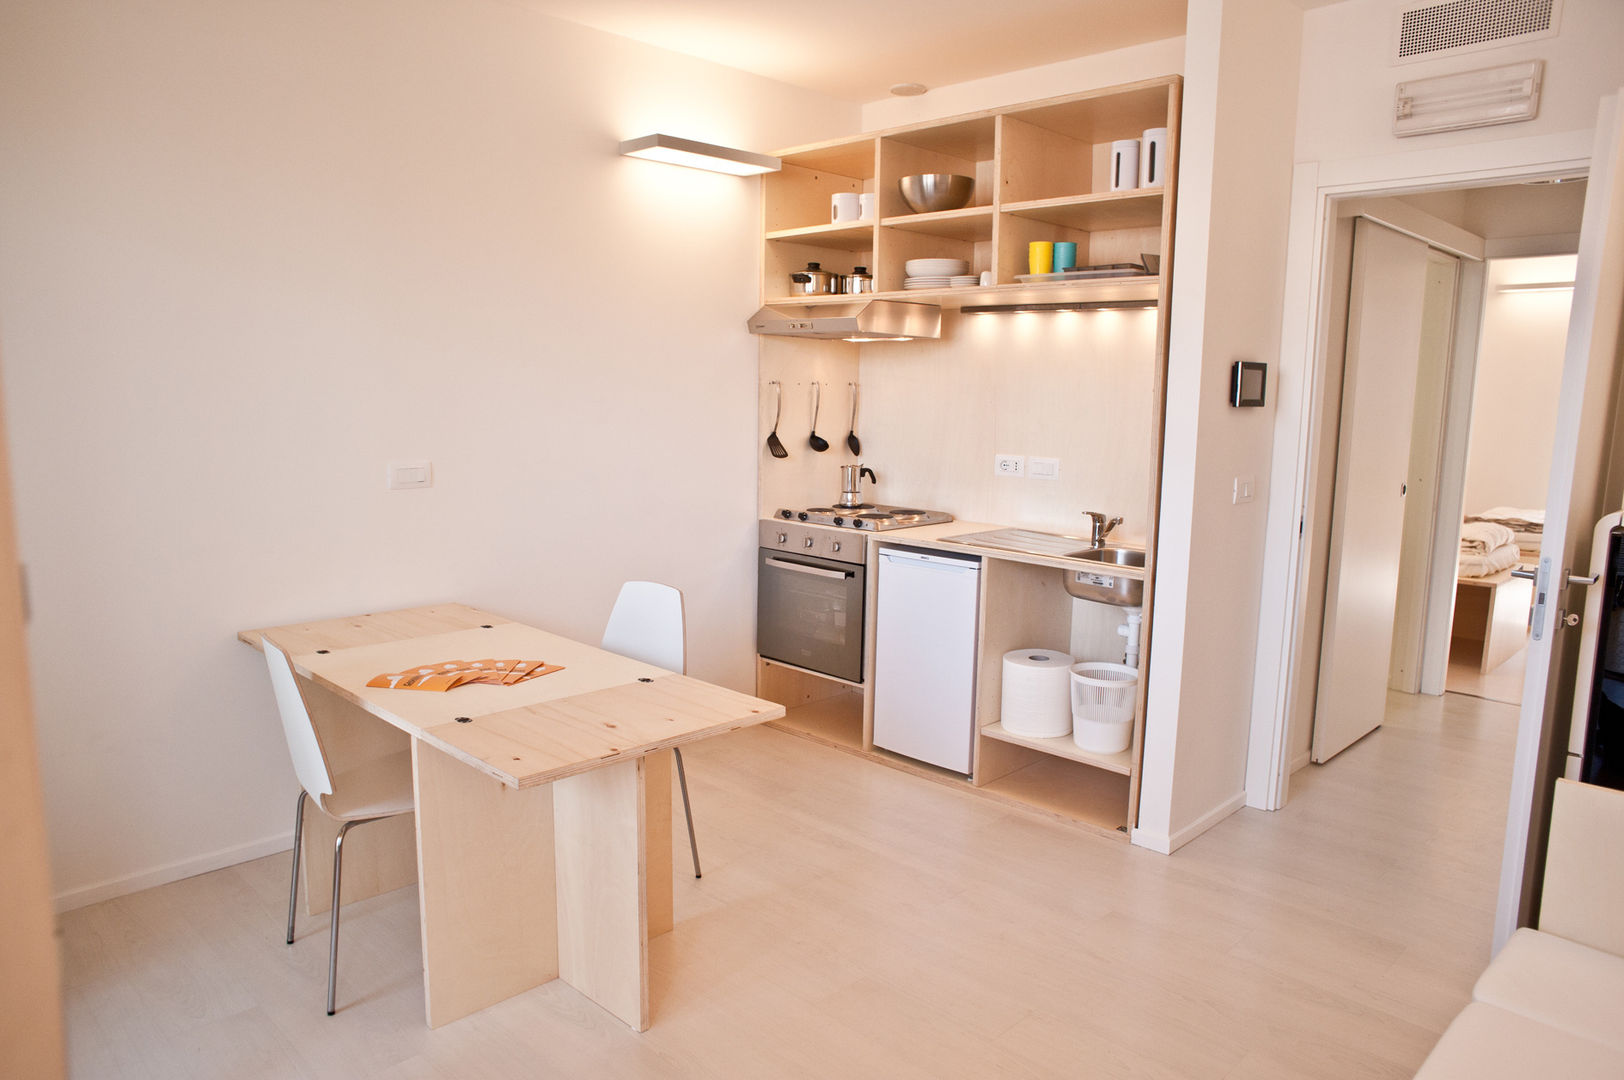 CasaZera: prototipo abitativo sostenibile in aree industriali dismesse, Torino, TRA - architettura condivisa TRA - architettura condivisa Industrial style kitchen